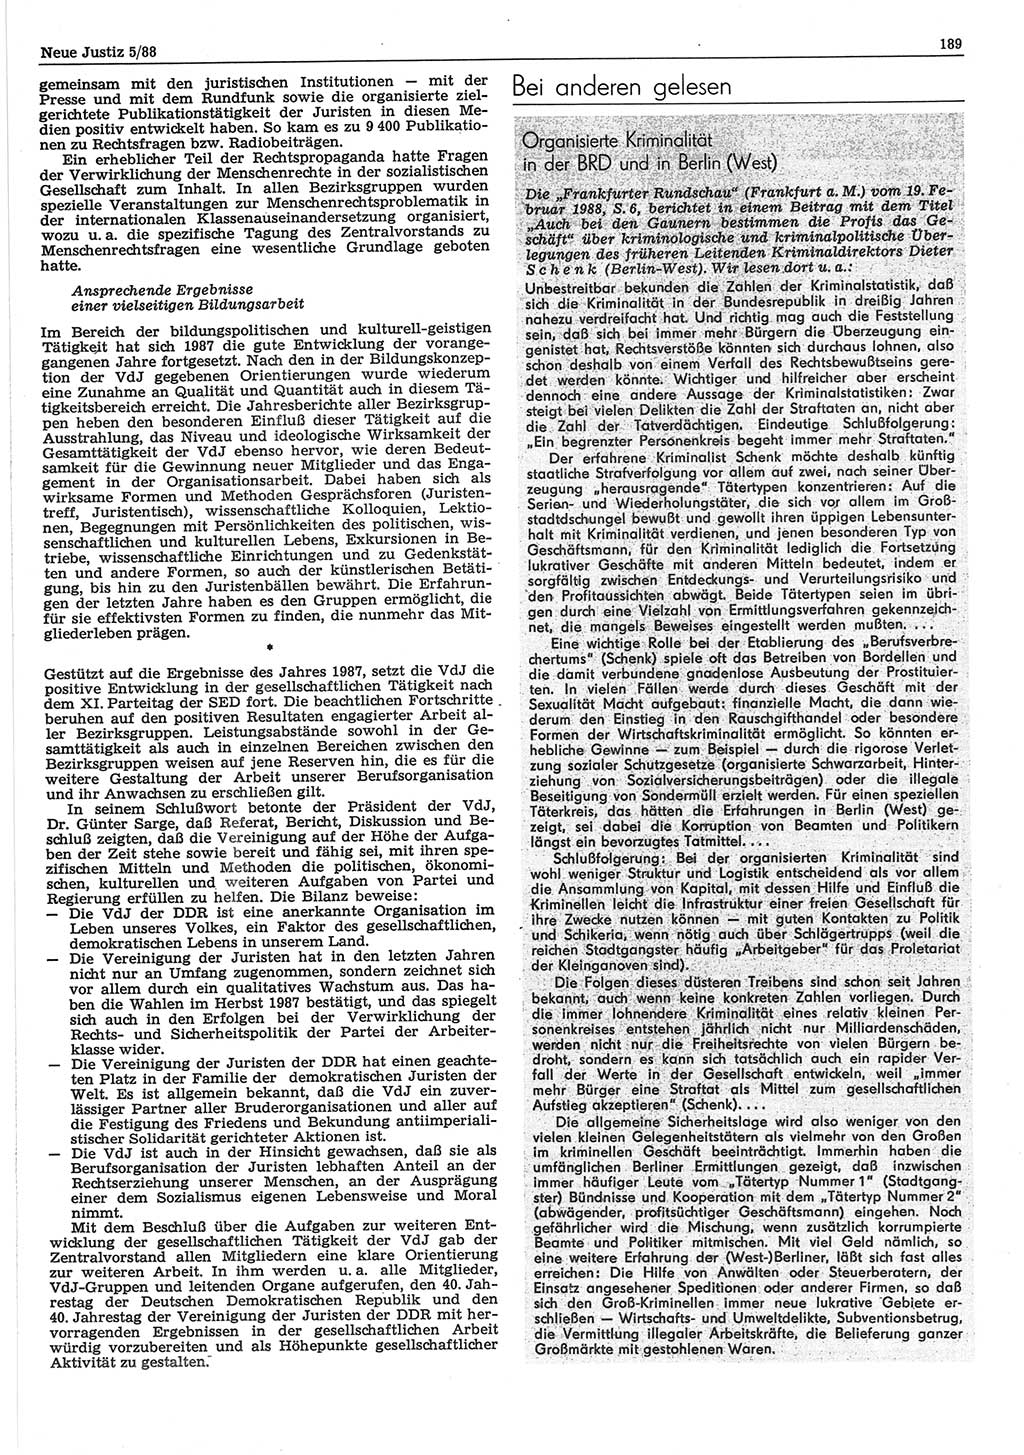 Neue Justiz (NJ), Zeitschrift für sozialistisches Recht und Gesetzlichkeit [Deutsche Demokratische Republik (DDR)], 42. Jahrgang 1988, Seite 189 (NJ DDR 1988, S. 189)